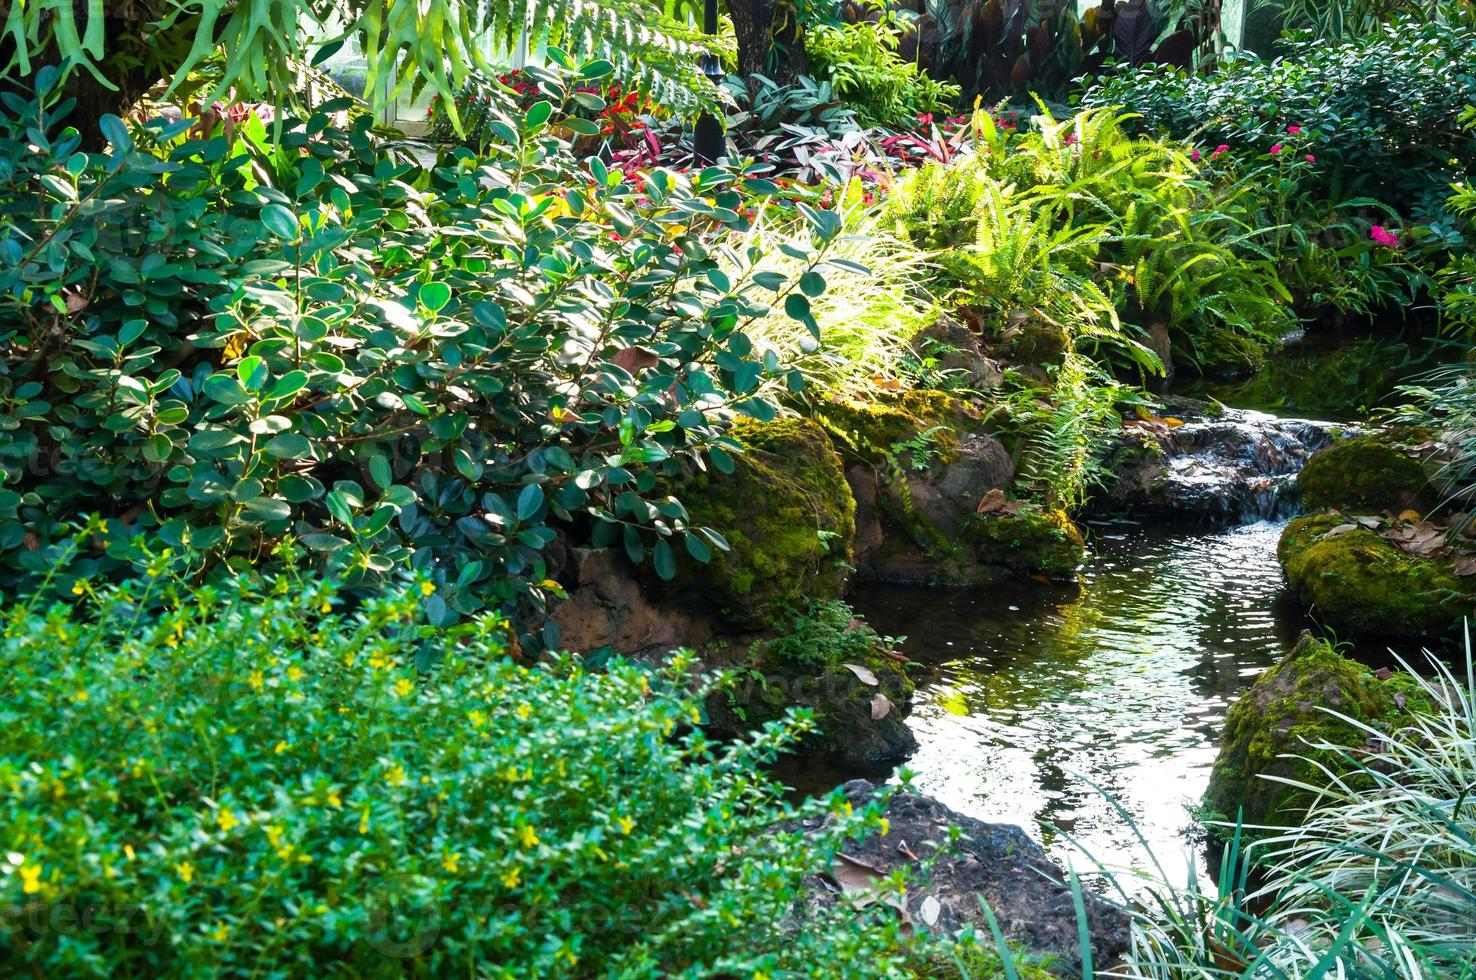 magnifique aménagement paysager avec magnifique les plantes et fleurs, printemps fleurs dans le asiatique jardin avec une rivière photo